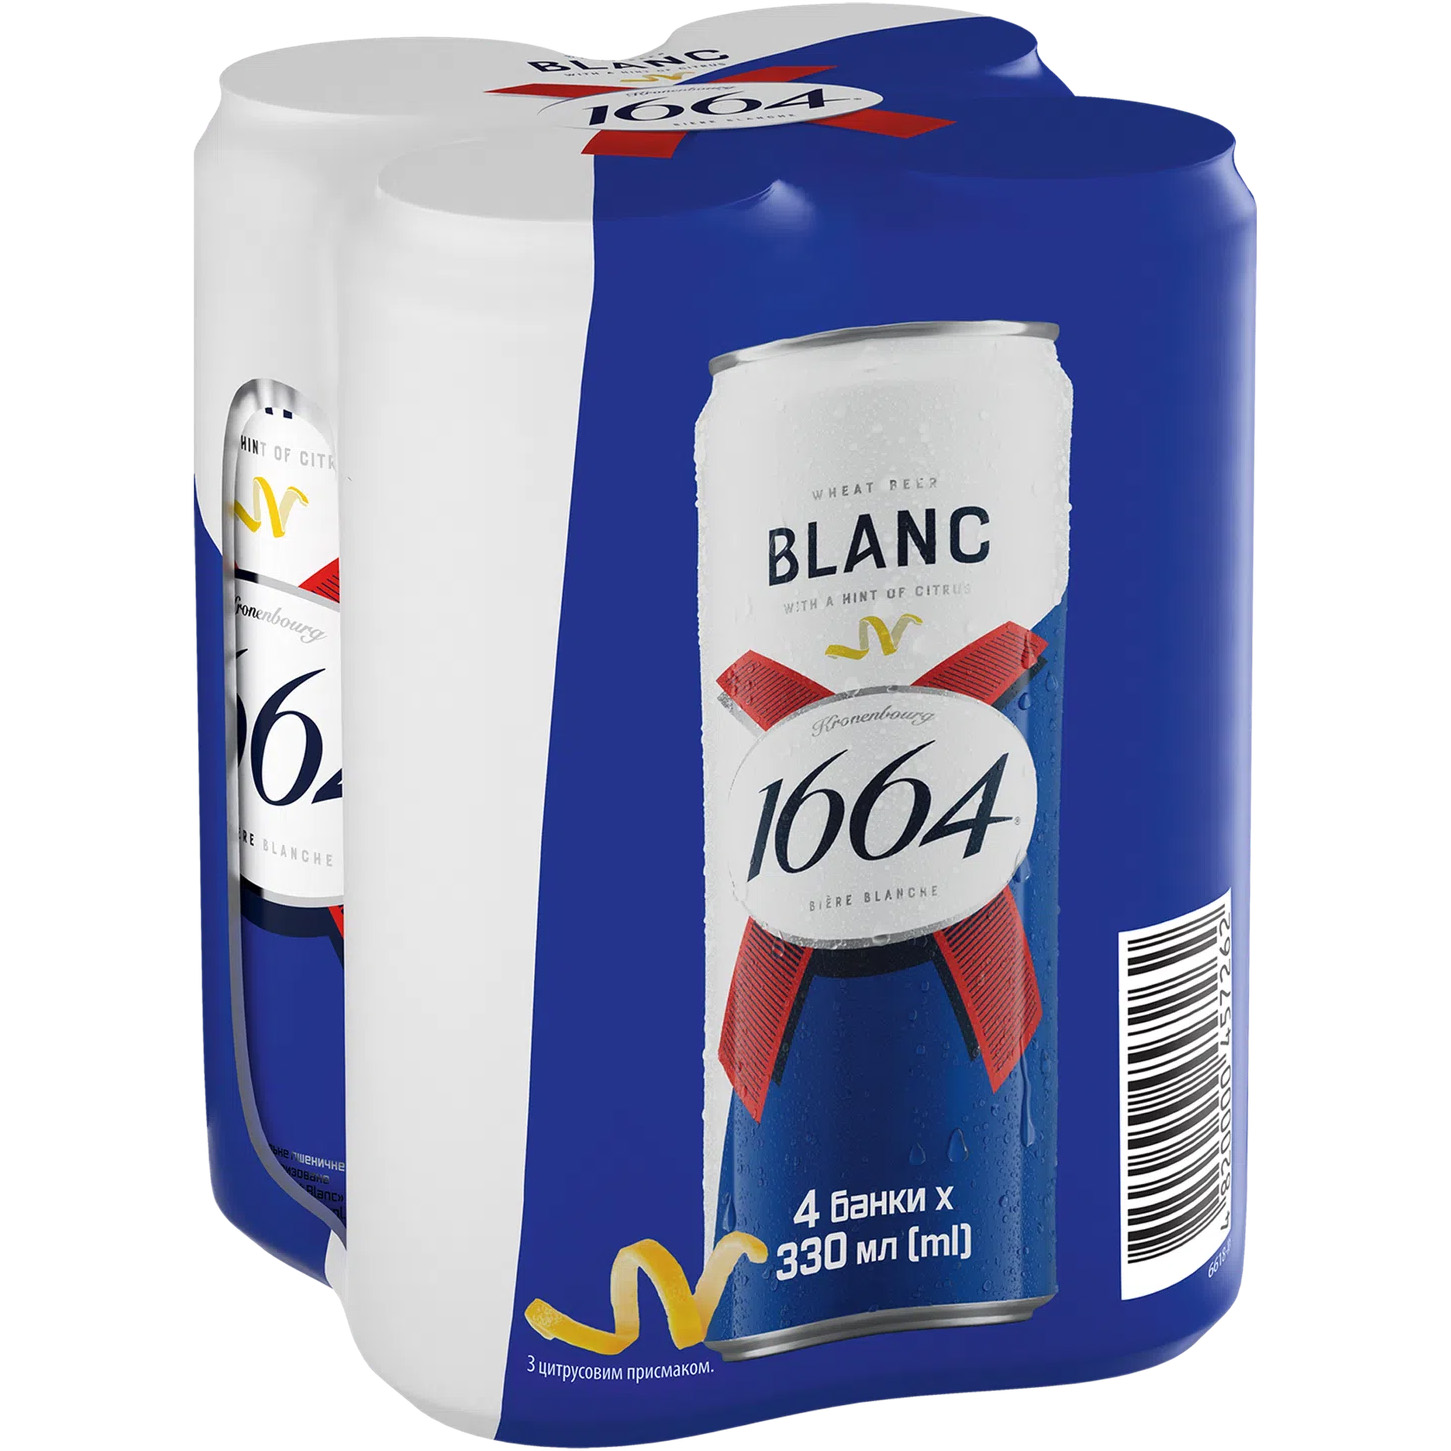 Пиво Kronenbourg 1664 Blanc with a hint of citrus светлое 4.8% ж/б, 1.32 л (4 шт. х 0.33 л) (796876) - фото 1